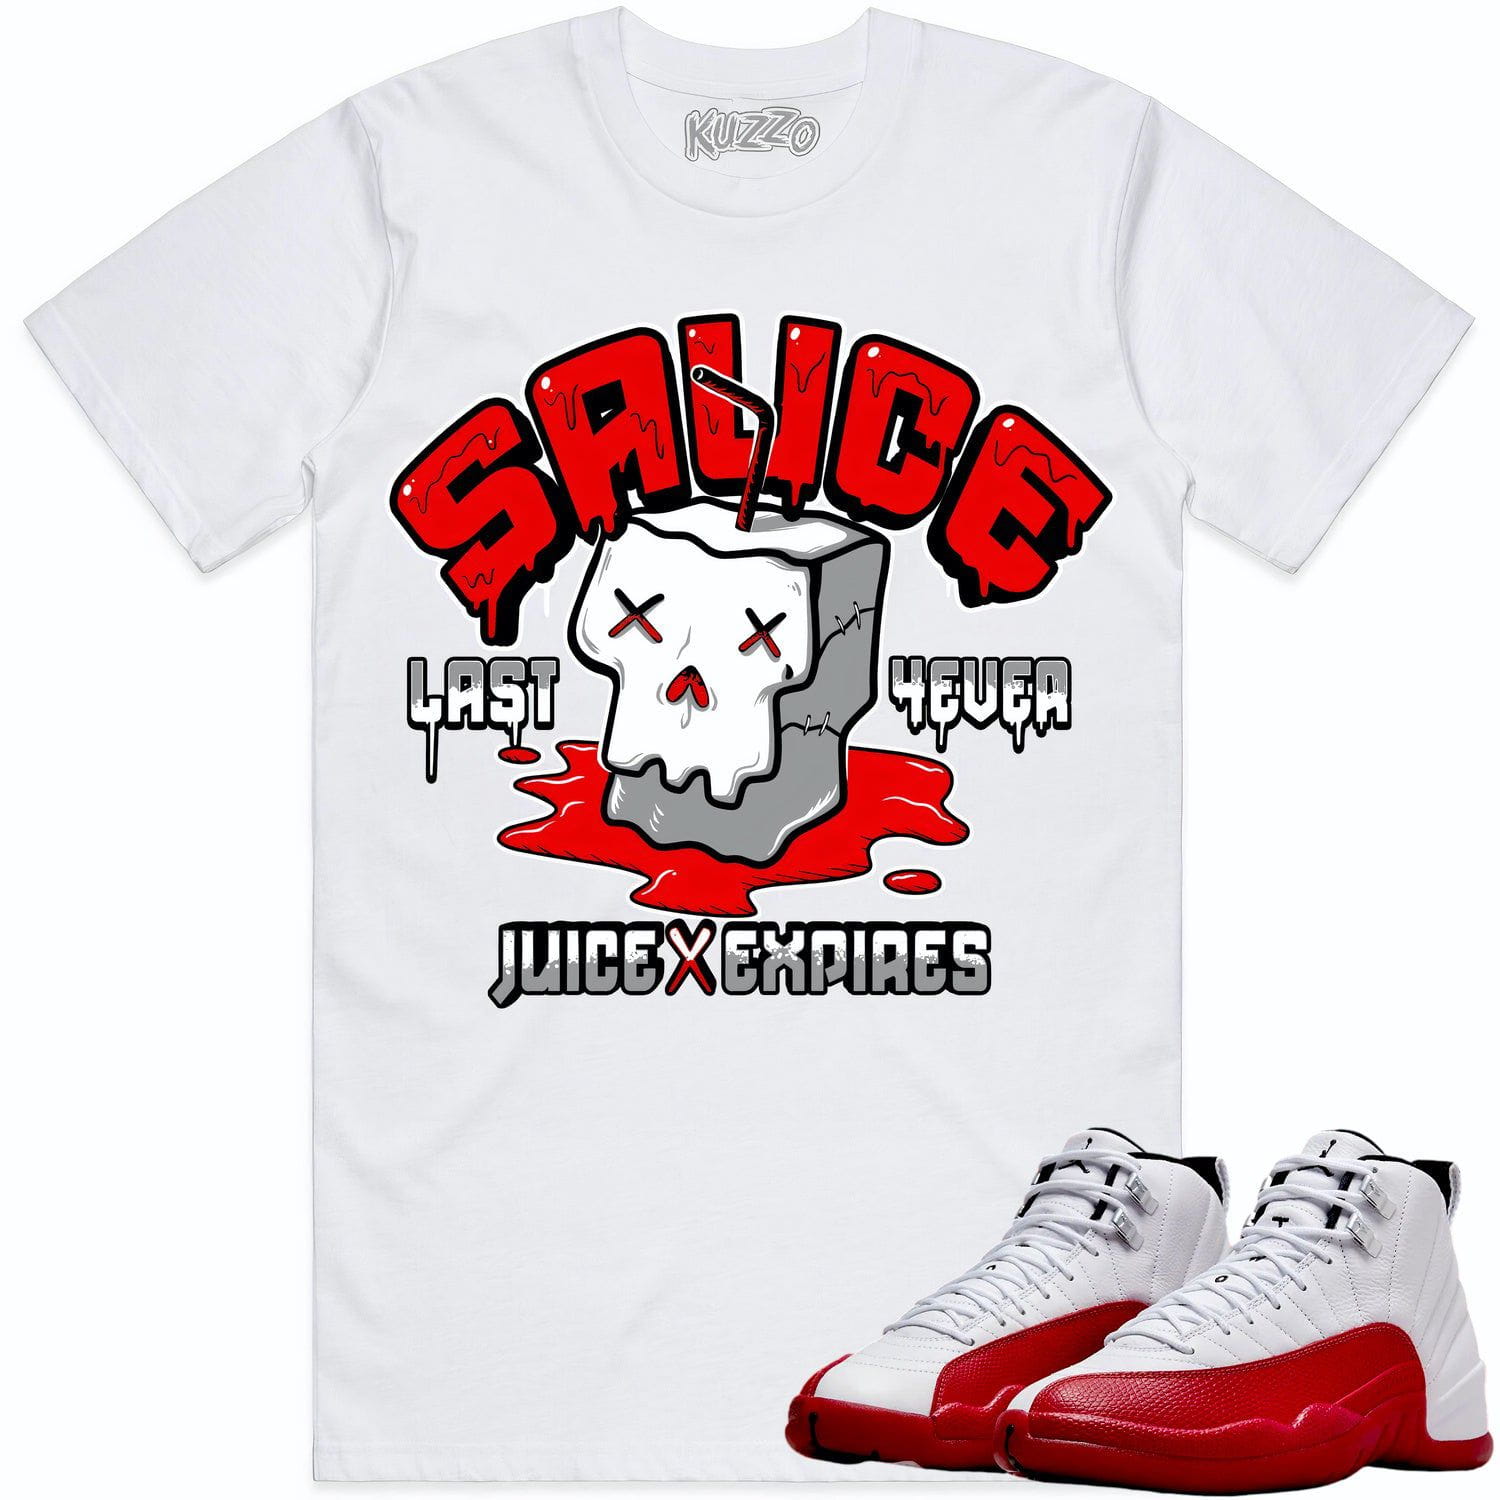 Cherry 12s Shirt - Jordan Retro 12 Cherry Shirts - Red Sauce